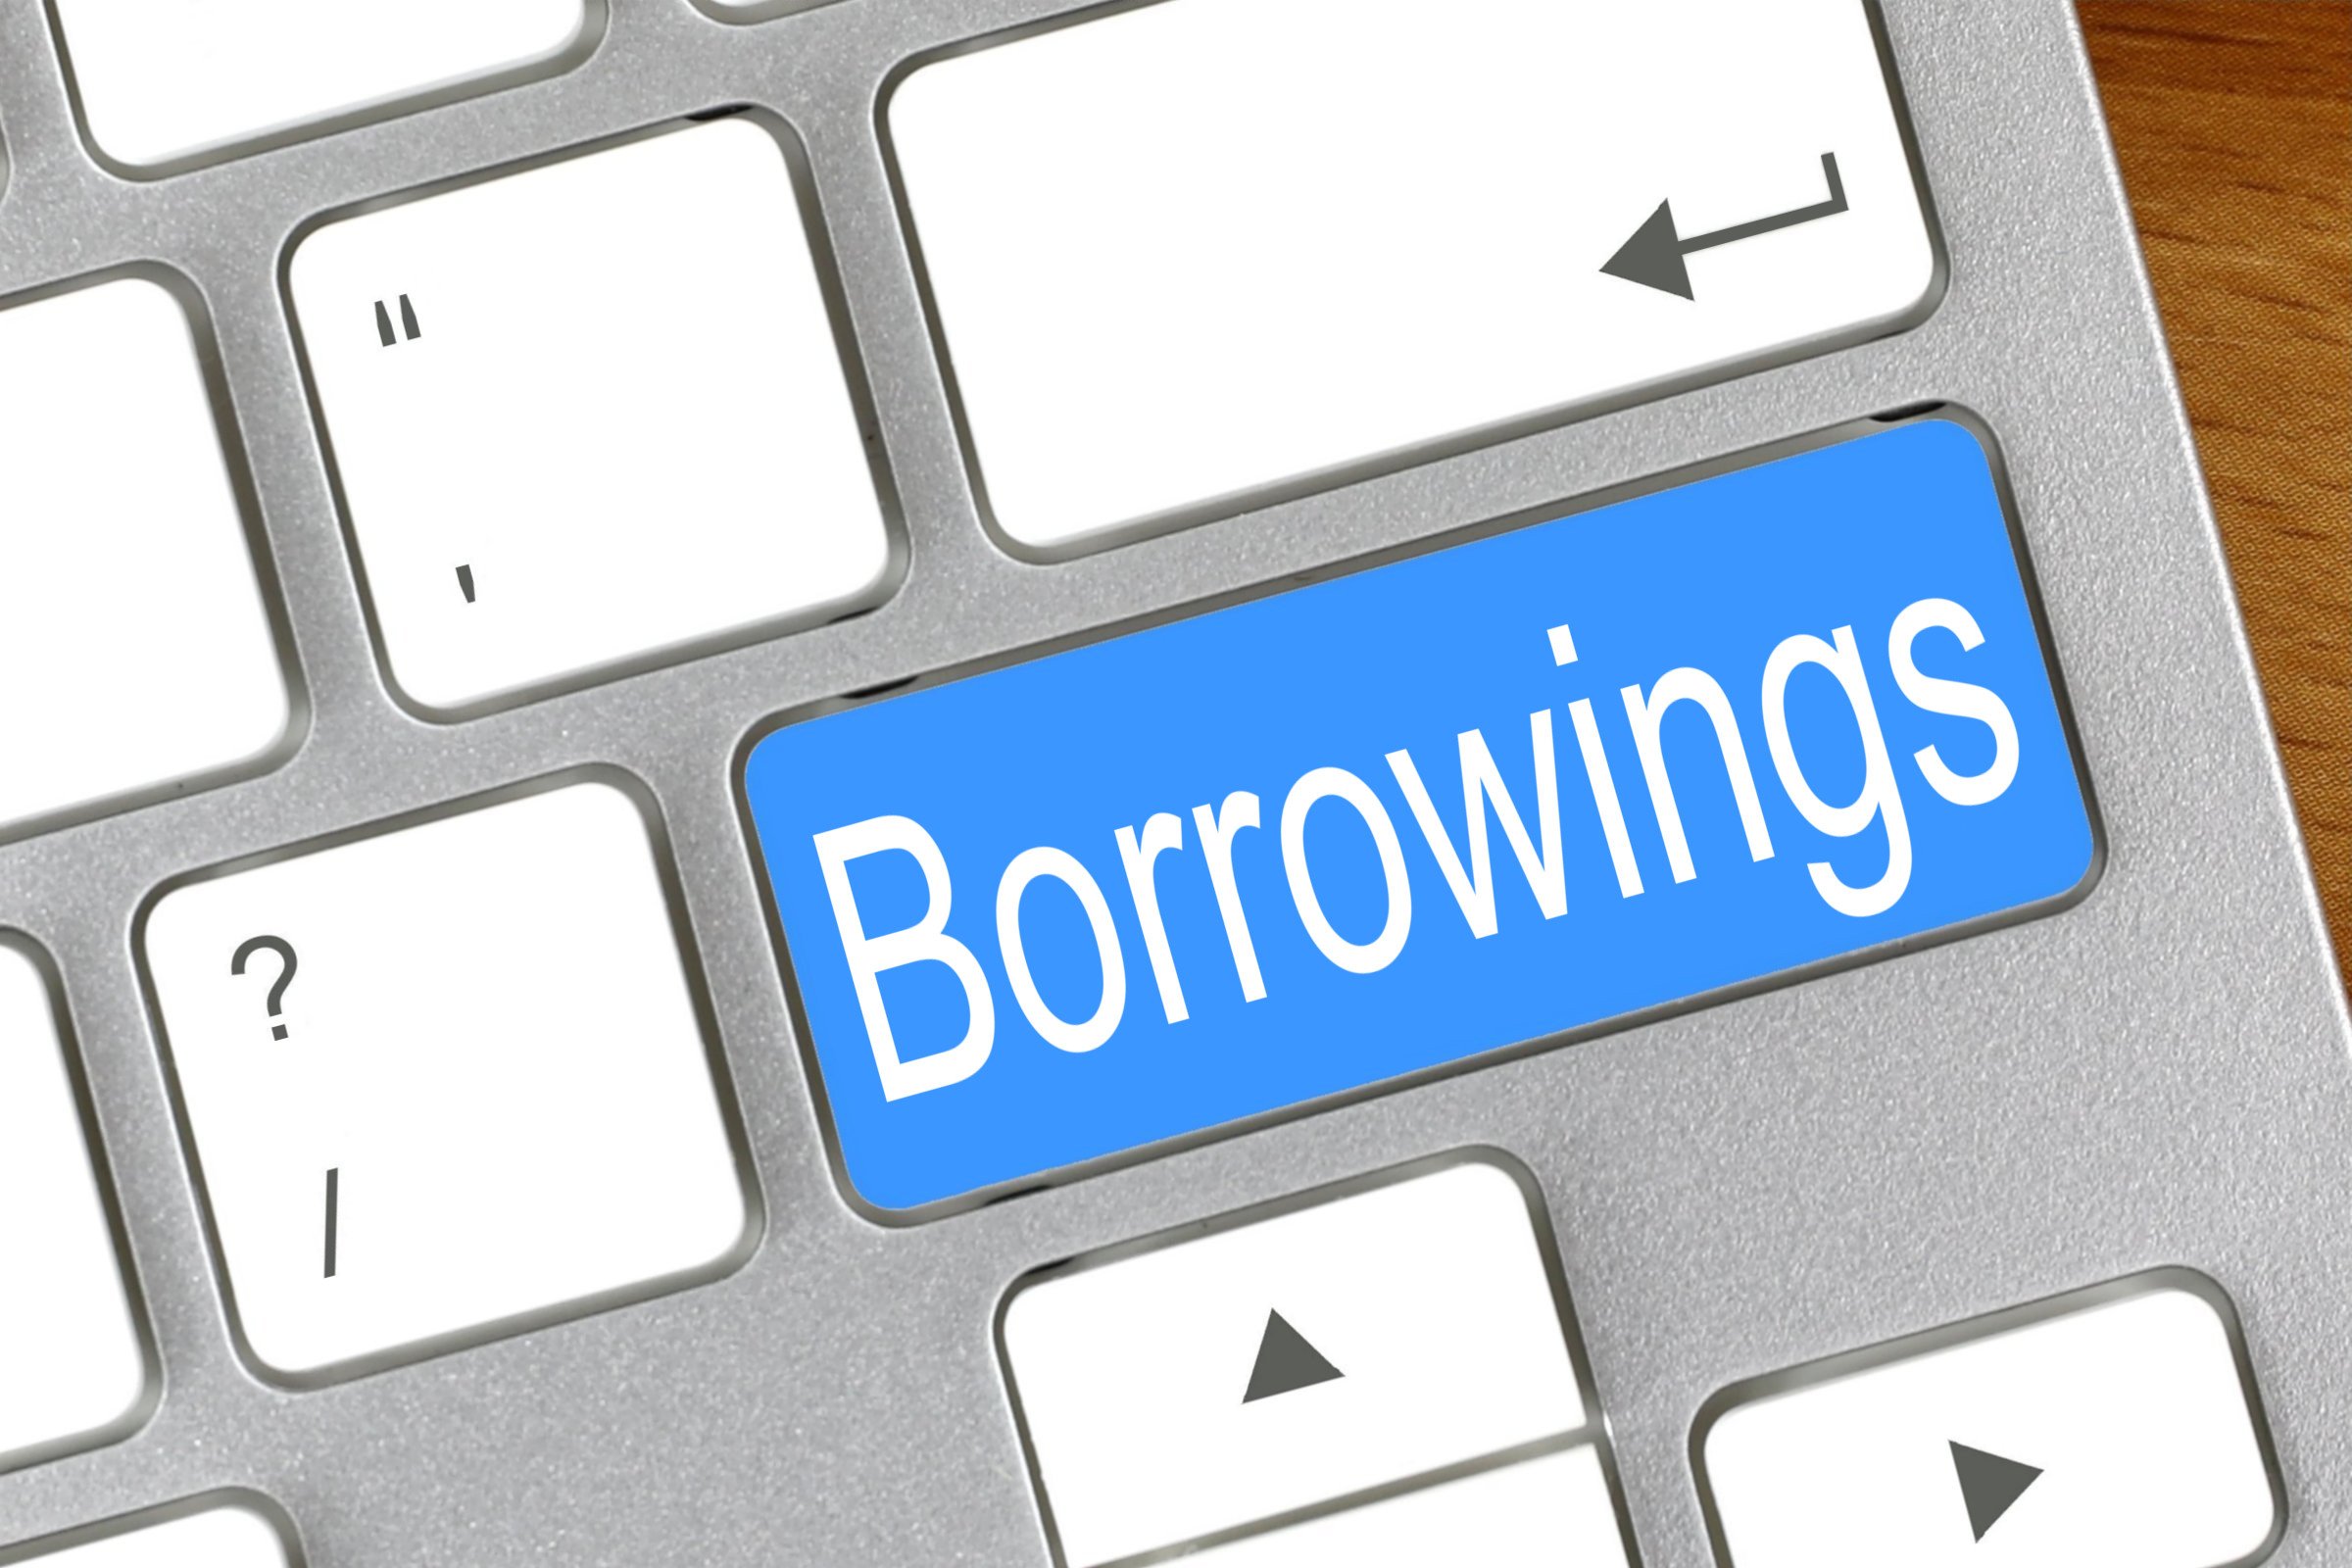 borrowings